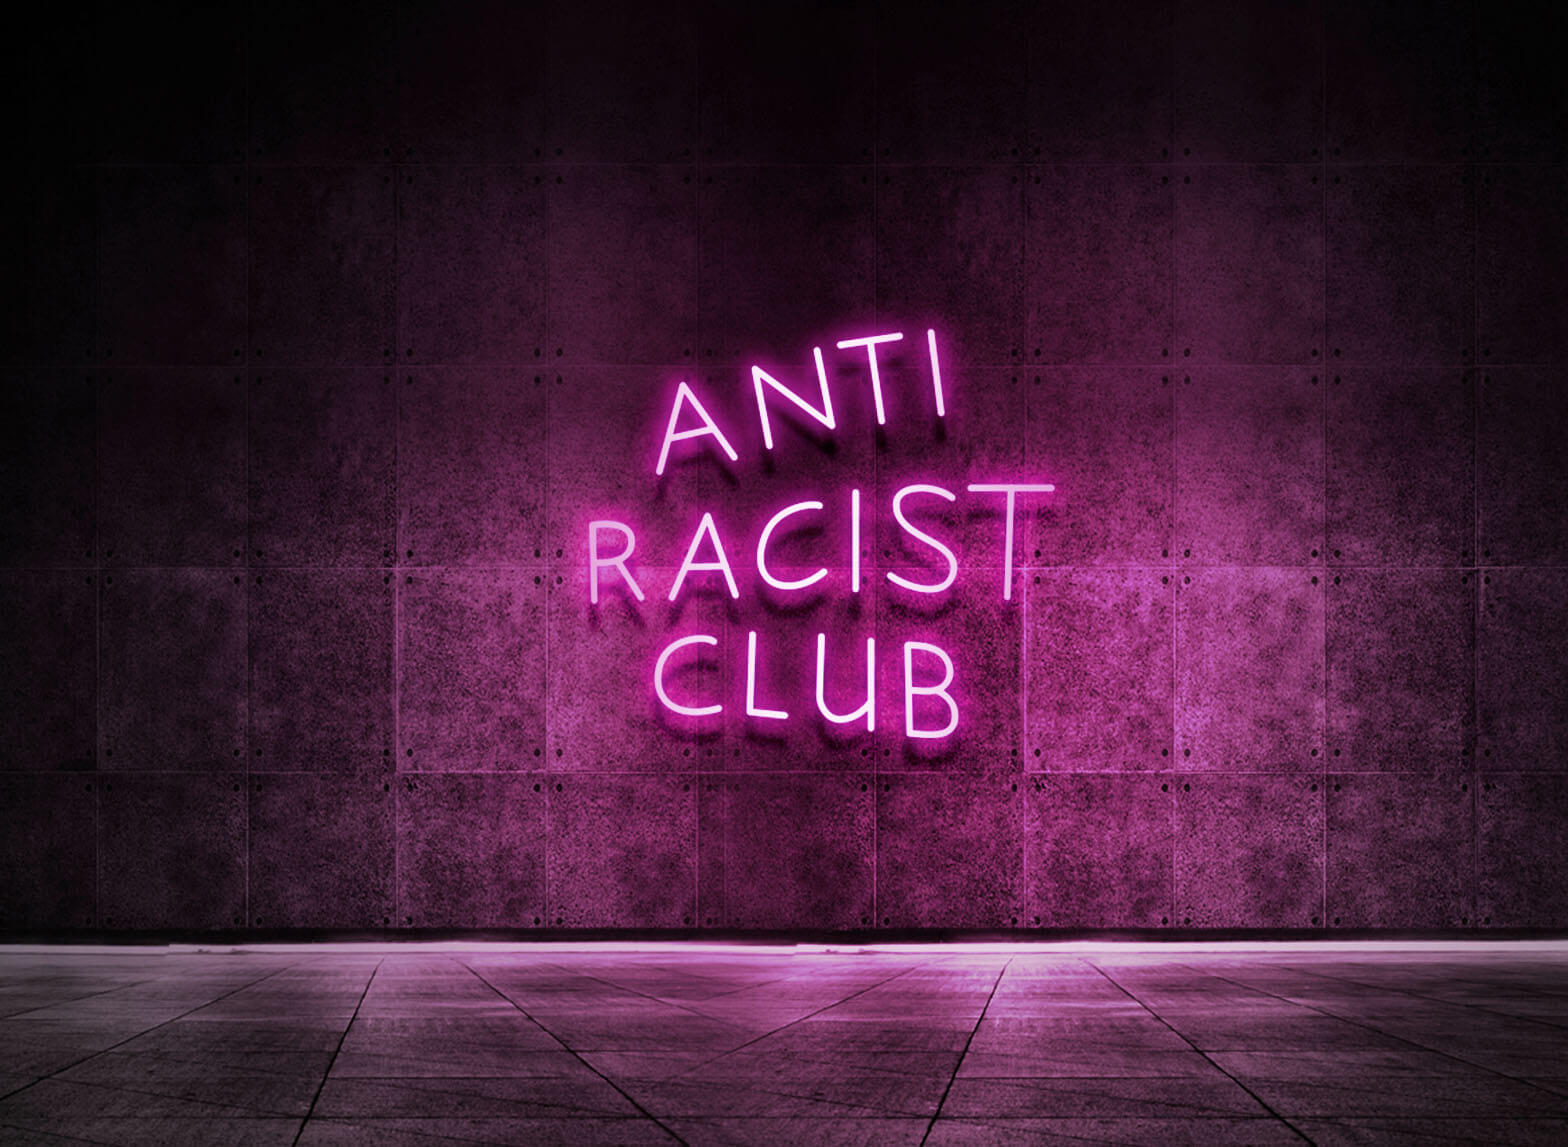 ANTI RACIST CLUB